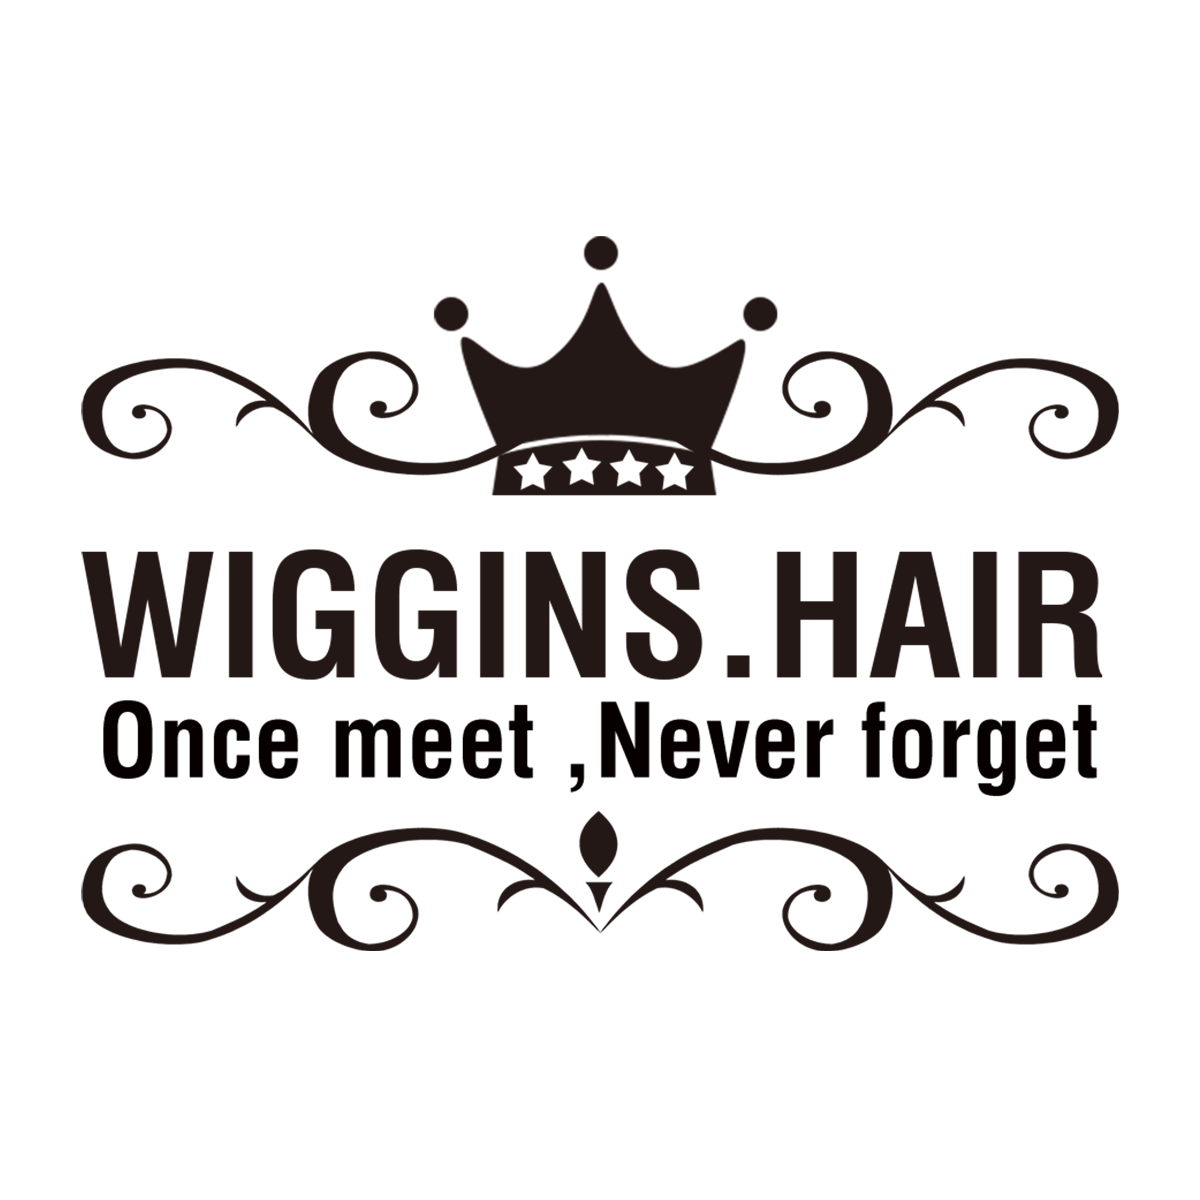 Wiggins Hair Happy Graduation season is coming